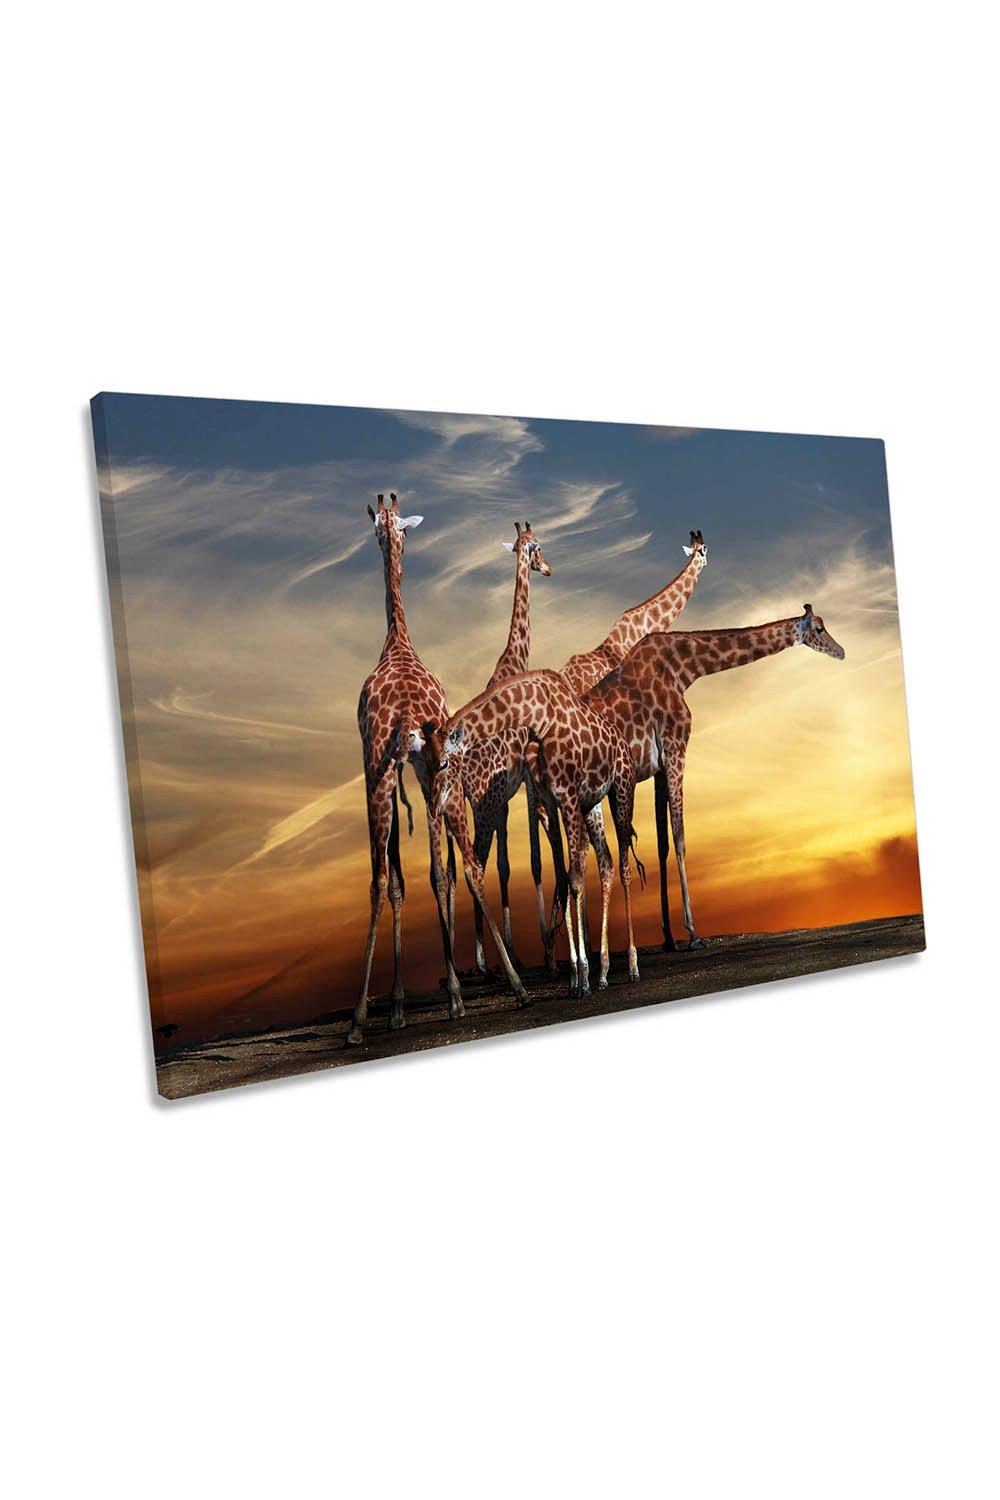 Giraffes Meeting Sunset Africa Canvas Wall Art Picture Print